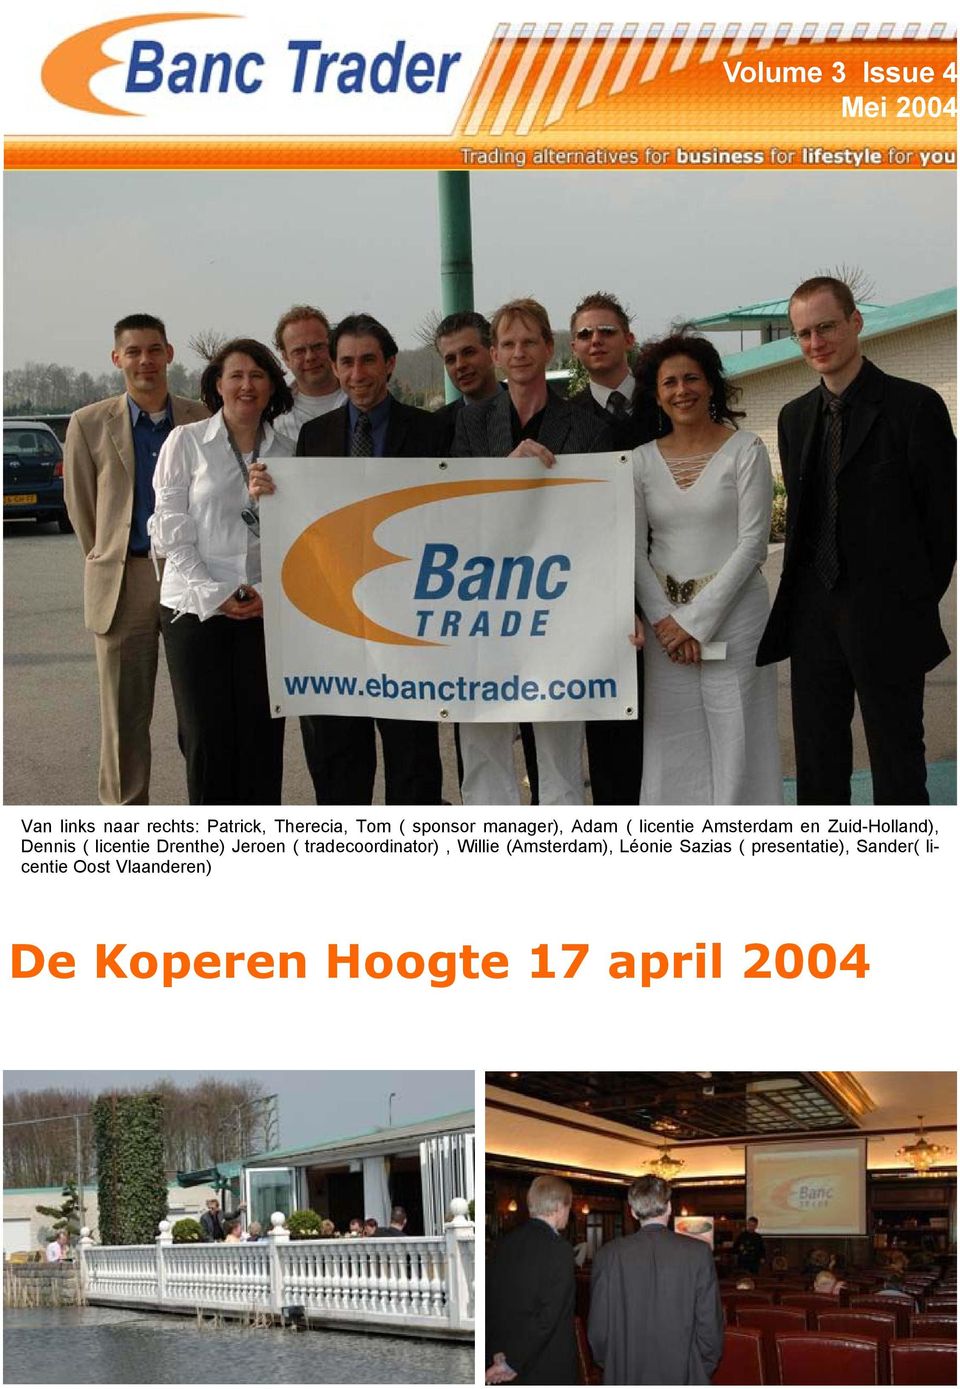 licentie Drenthe) Jeroen ( tradecoordinator), Willie (Amsterdam), Léonie